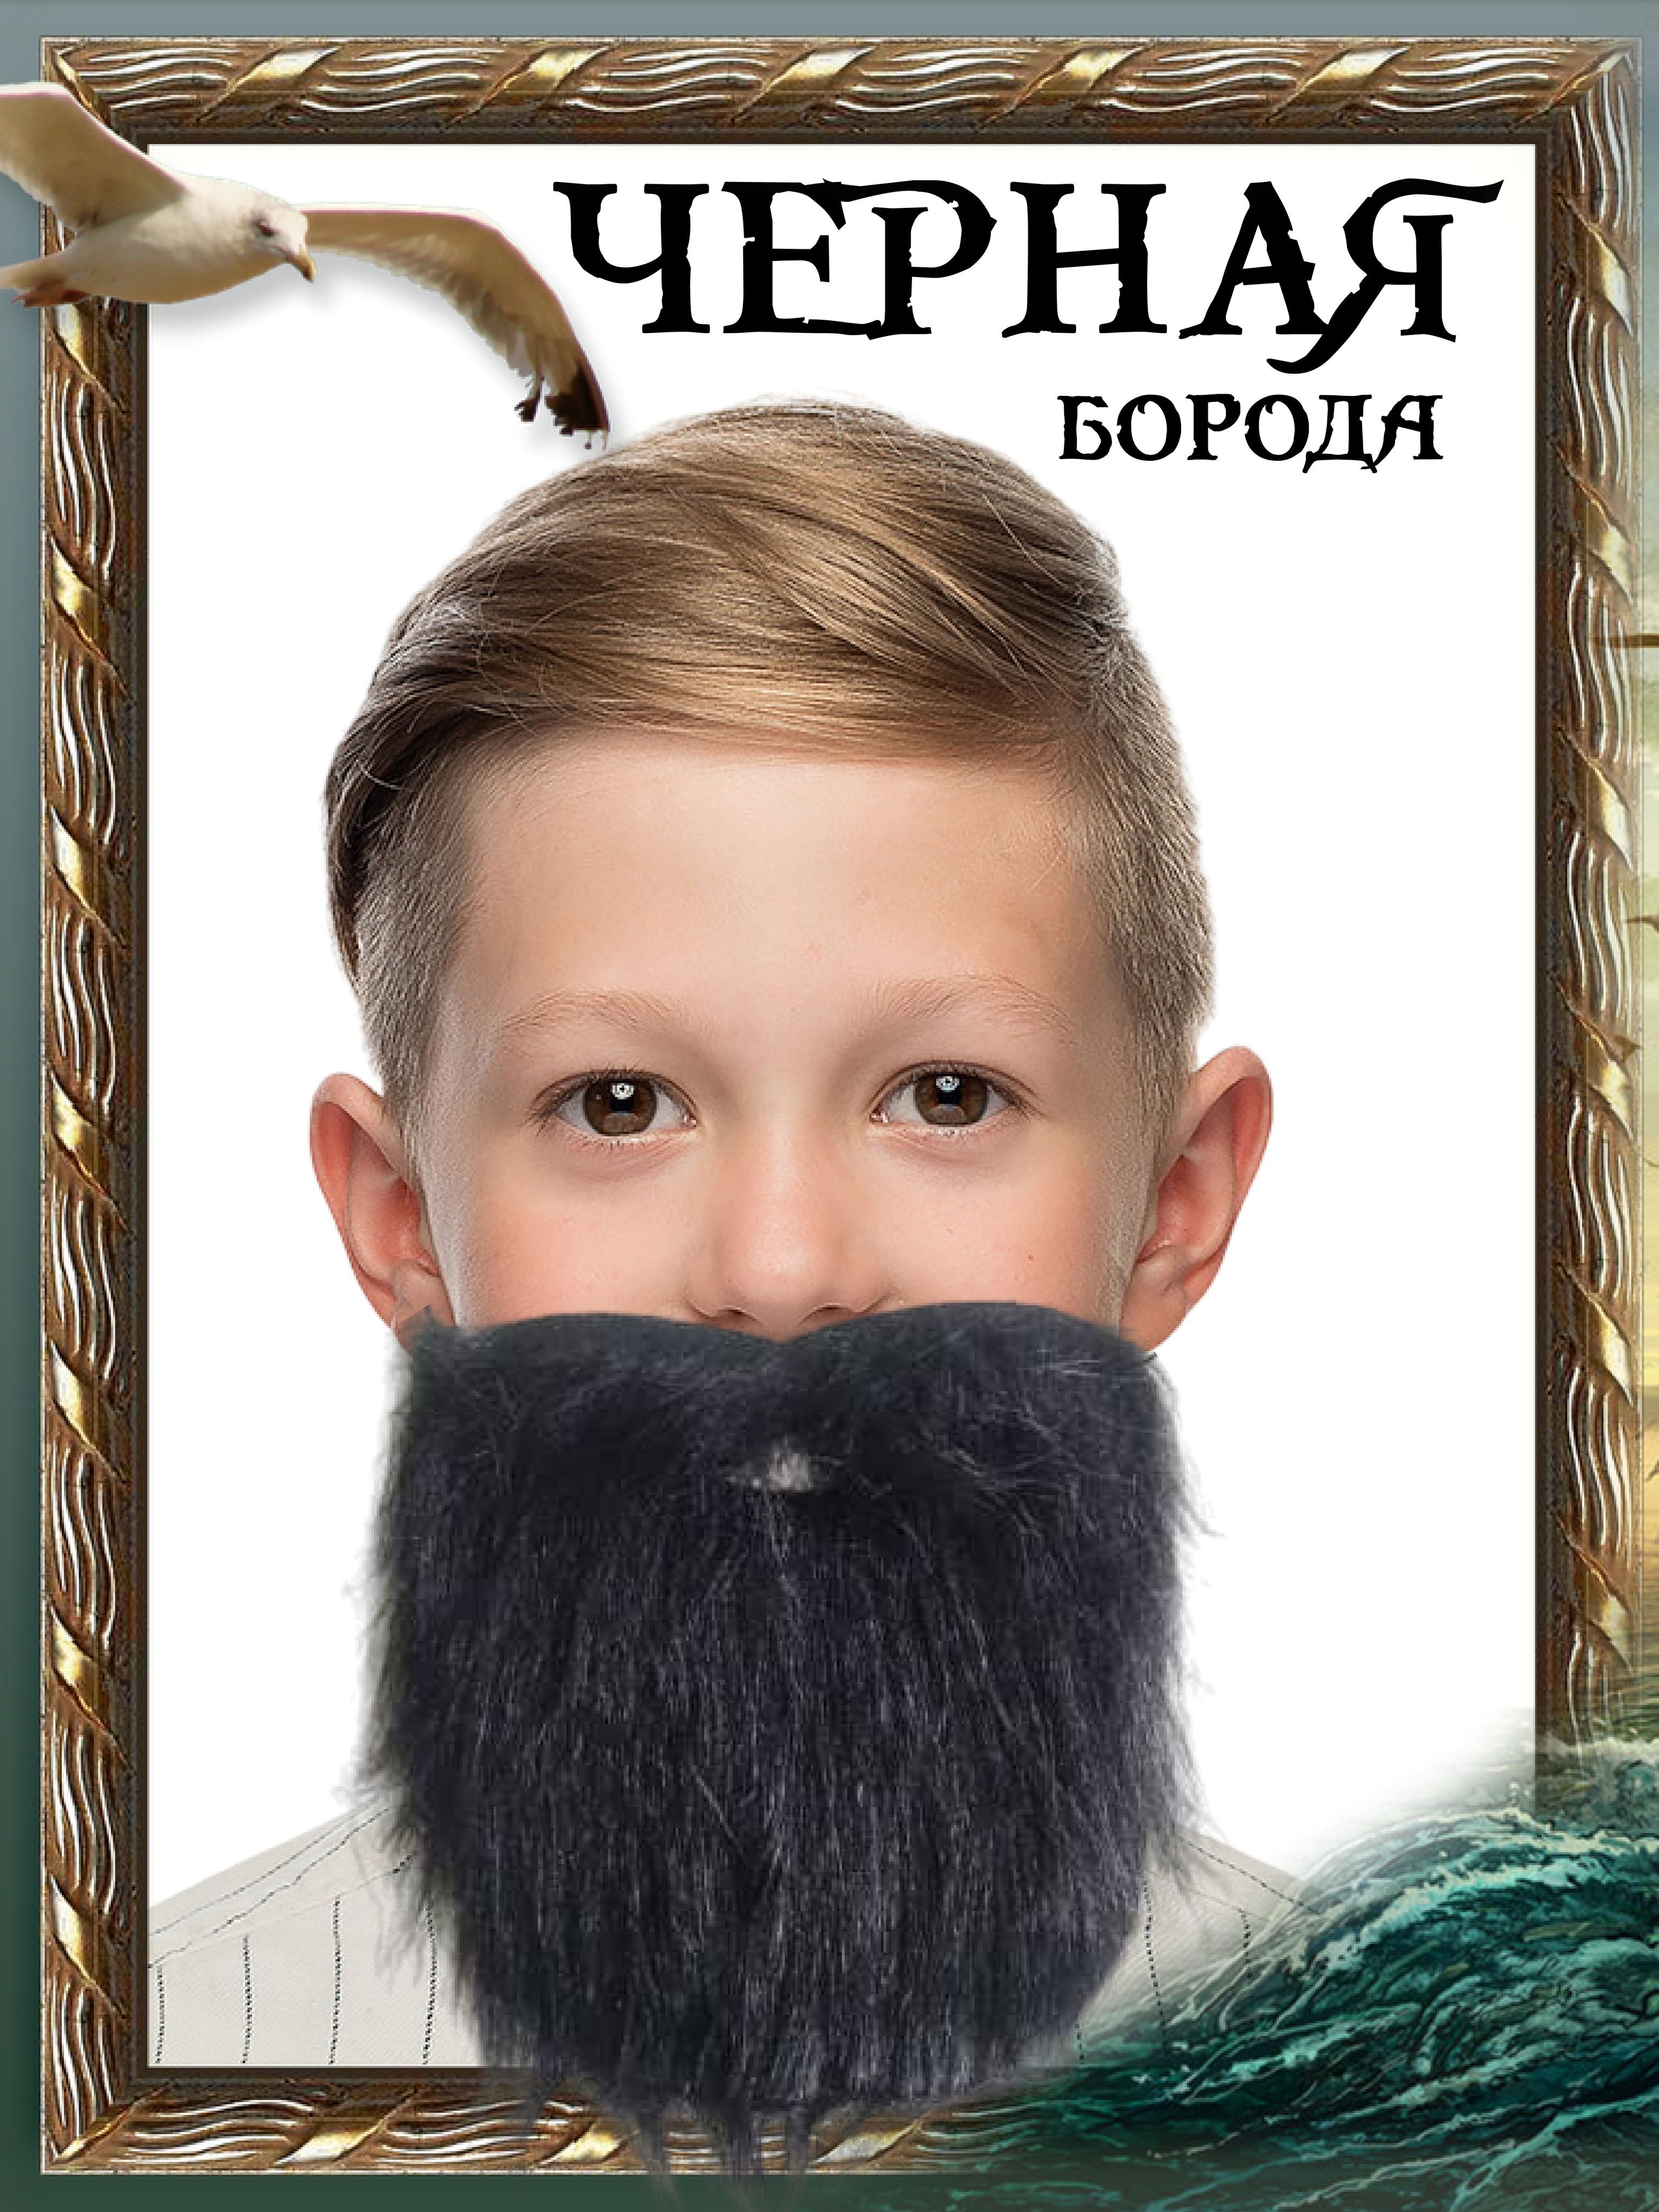 Купить парики бороды и усов в интернет-магазине вороковский.рф